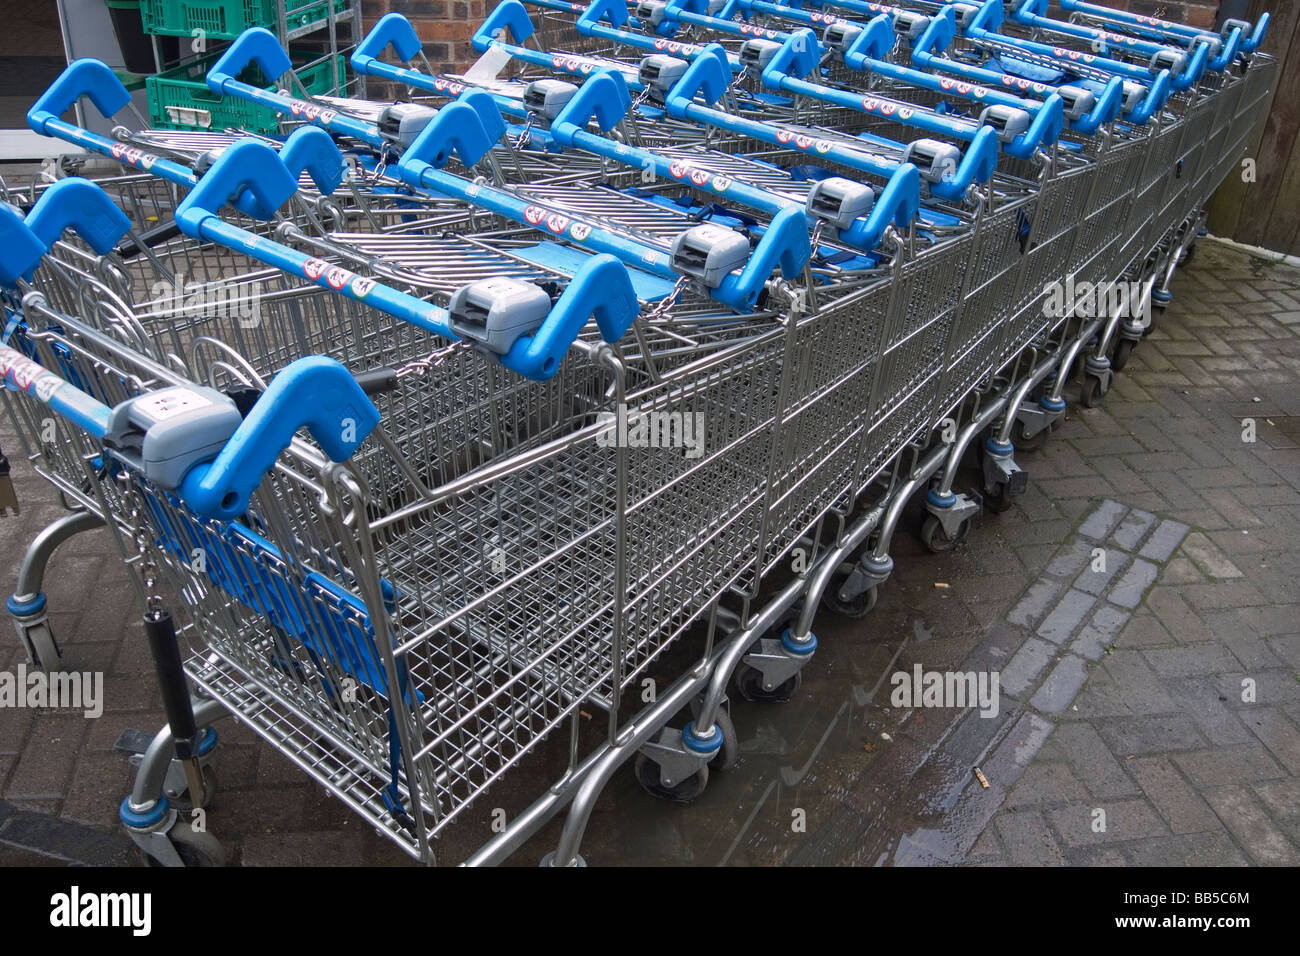 Ein Stapel von Coop-Supermarkt bezahlen, Wagen mit blauen Griffen zu  verwenden Stockfotografie - Alamy